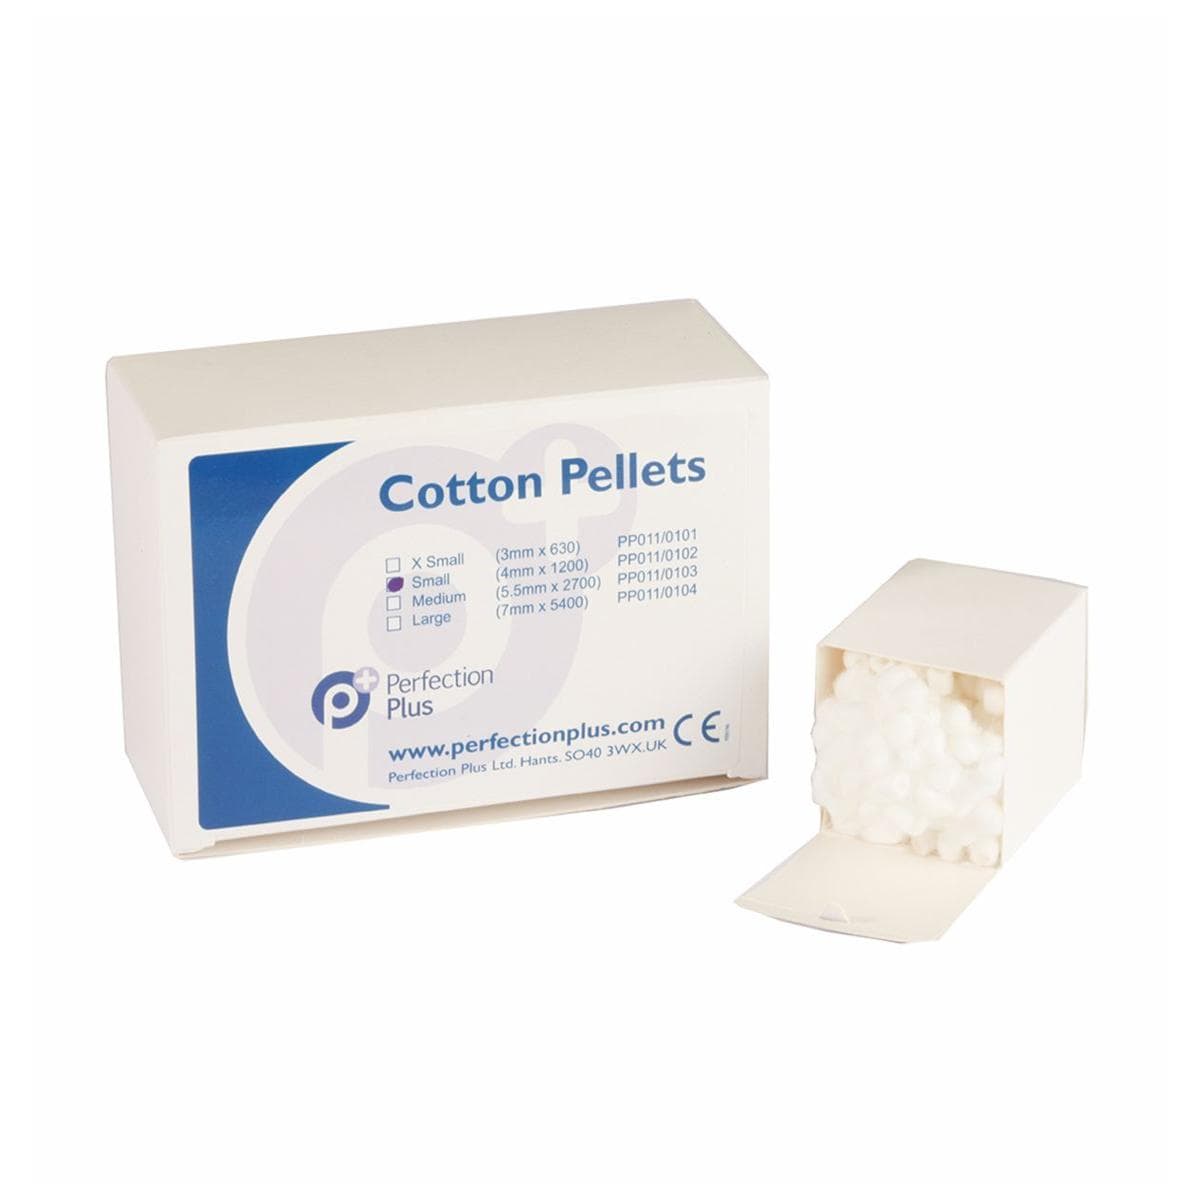 Cotton Pellets No.2 Medium 5.5mm